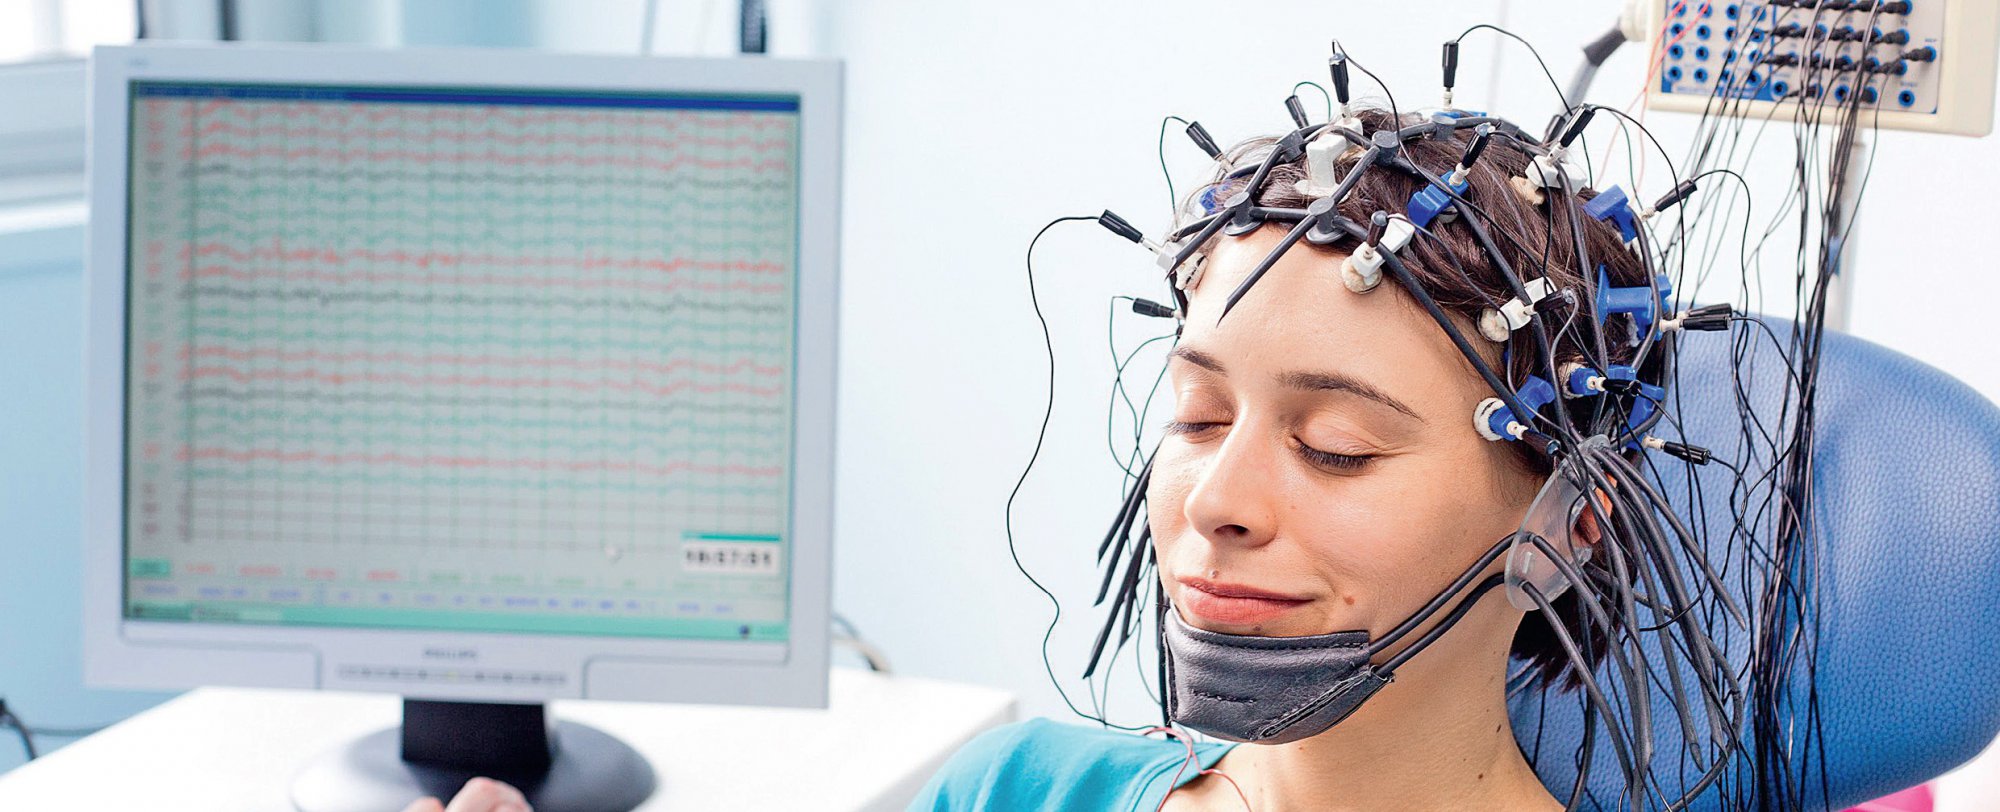 Эг ээг. Энцефалограмма головного мозга. РЭГ И ЭЭГ. Электроэнцефалография (ЭЭГ). Электроэнцефалография головного мозга (ЭЭГ).